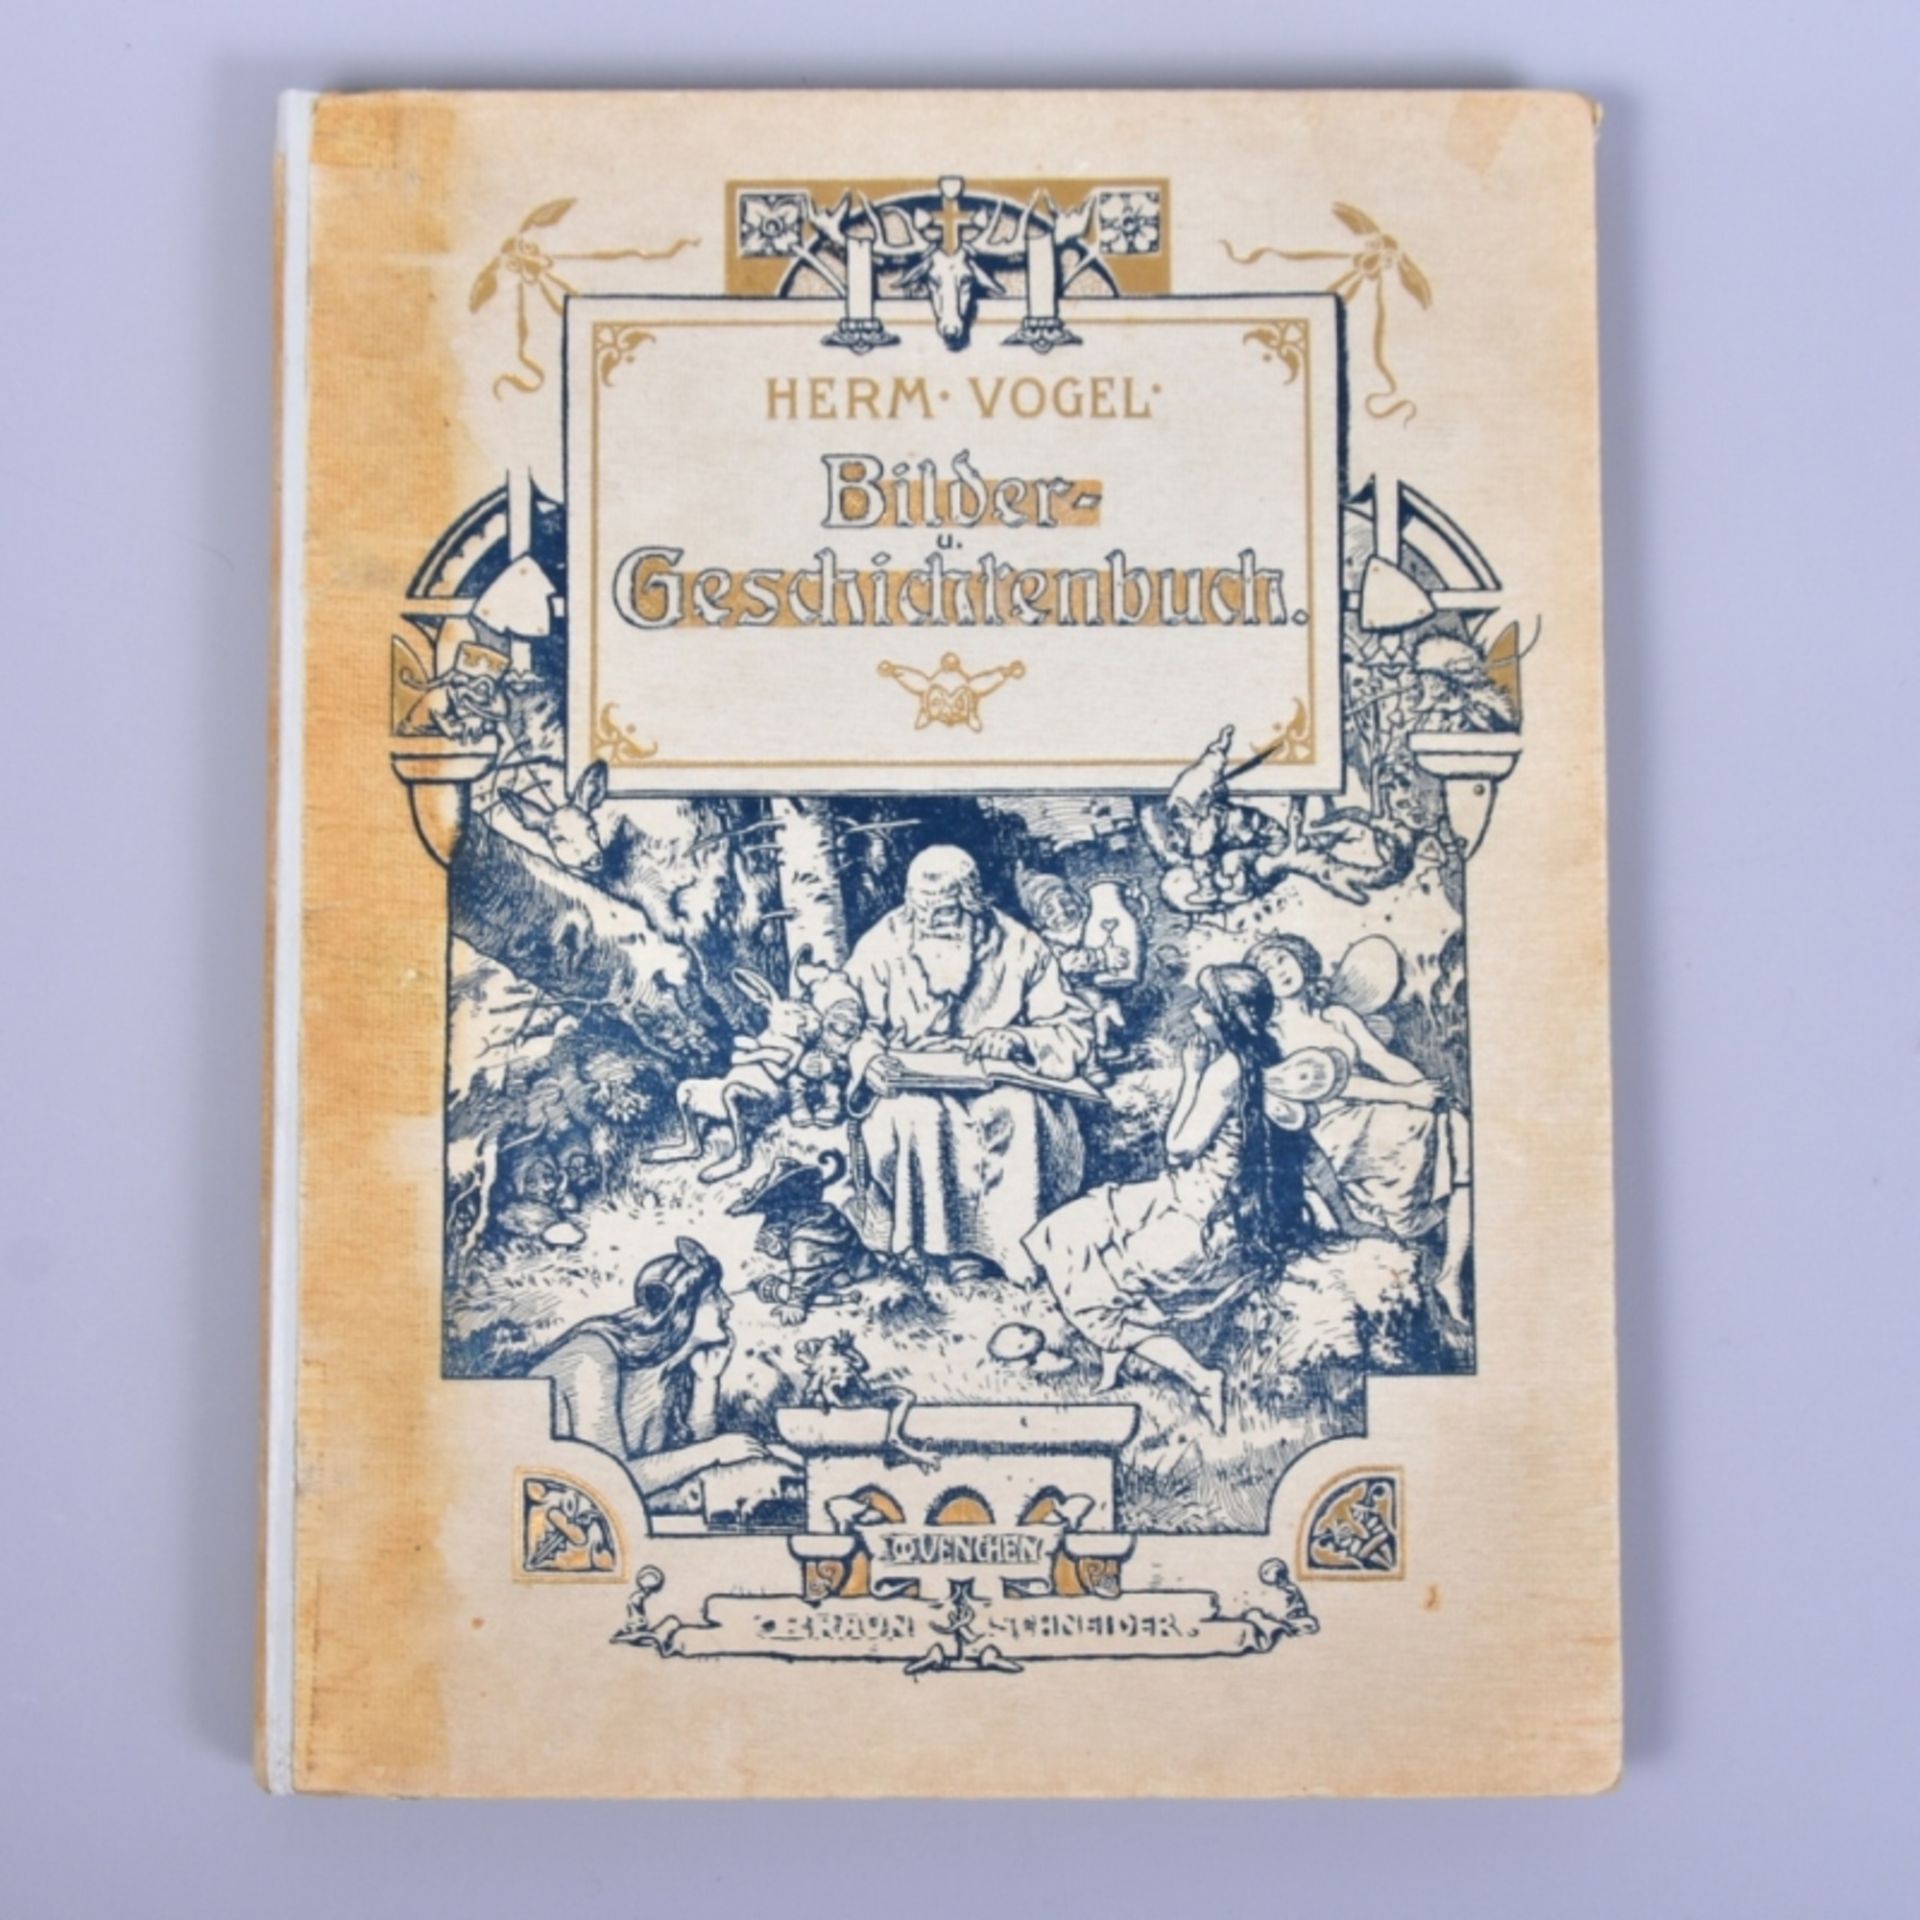 ,, Bilder und Geschichtenbuch" von Hermann Vogel, Verlag Braun und Schneider München, um 1900,